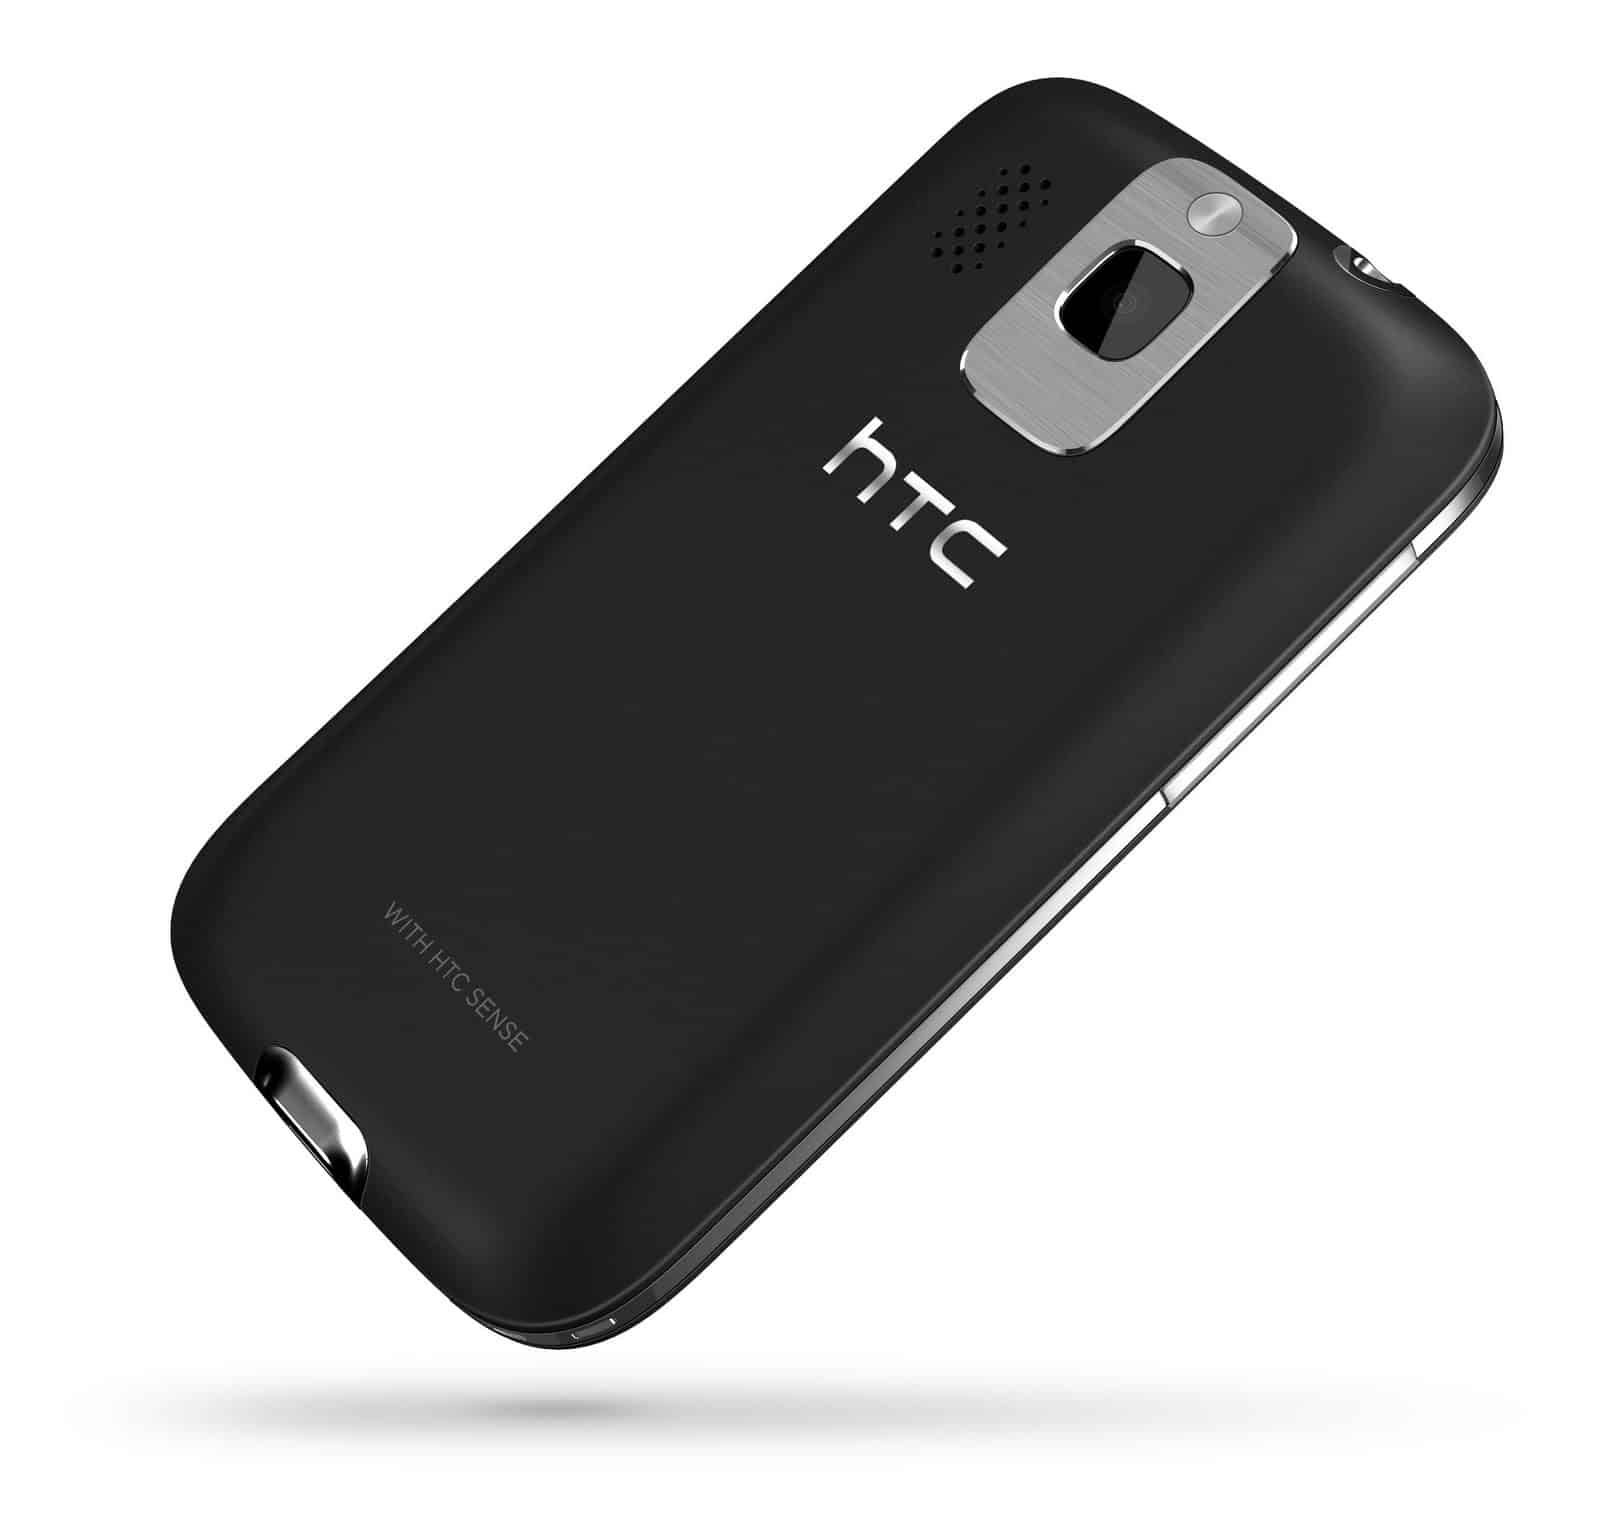 HTC pretende mejorar sus ingresos y posicionamiento en el mercado con la venta de smartphones de gama baja y media.